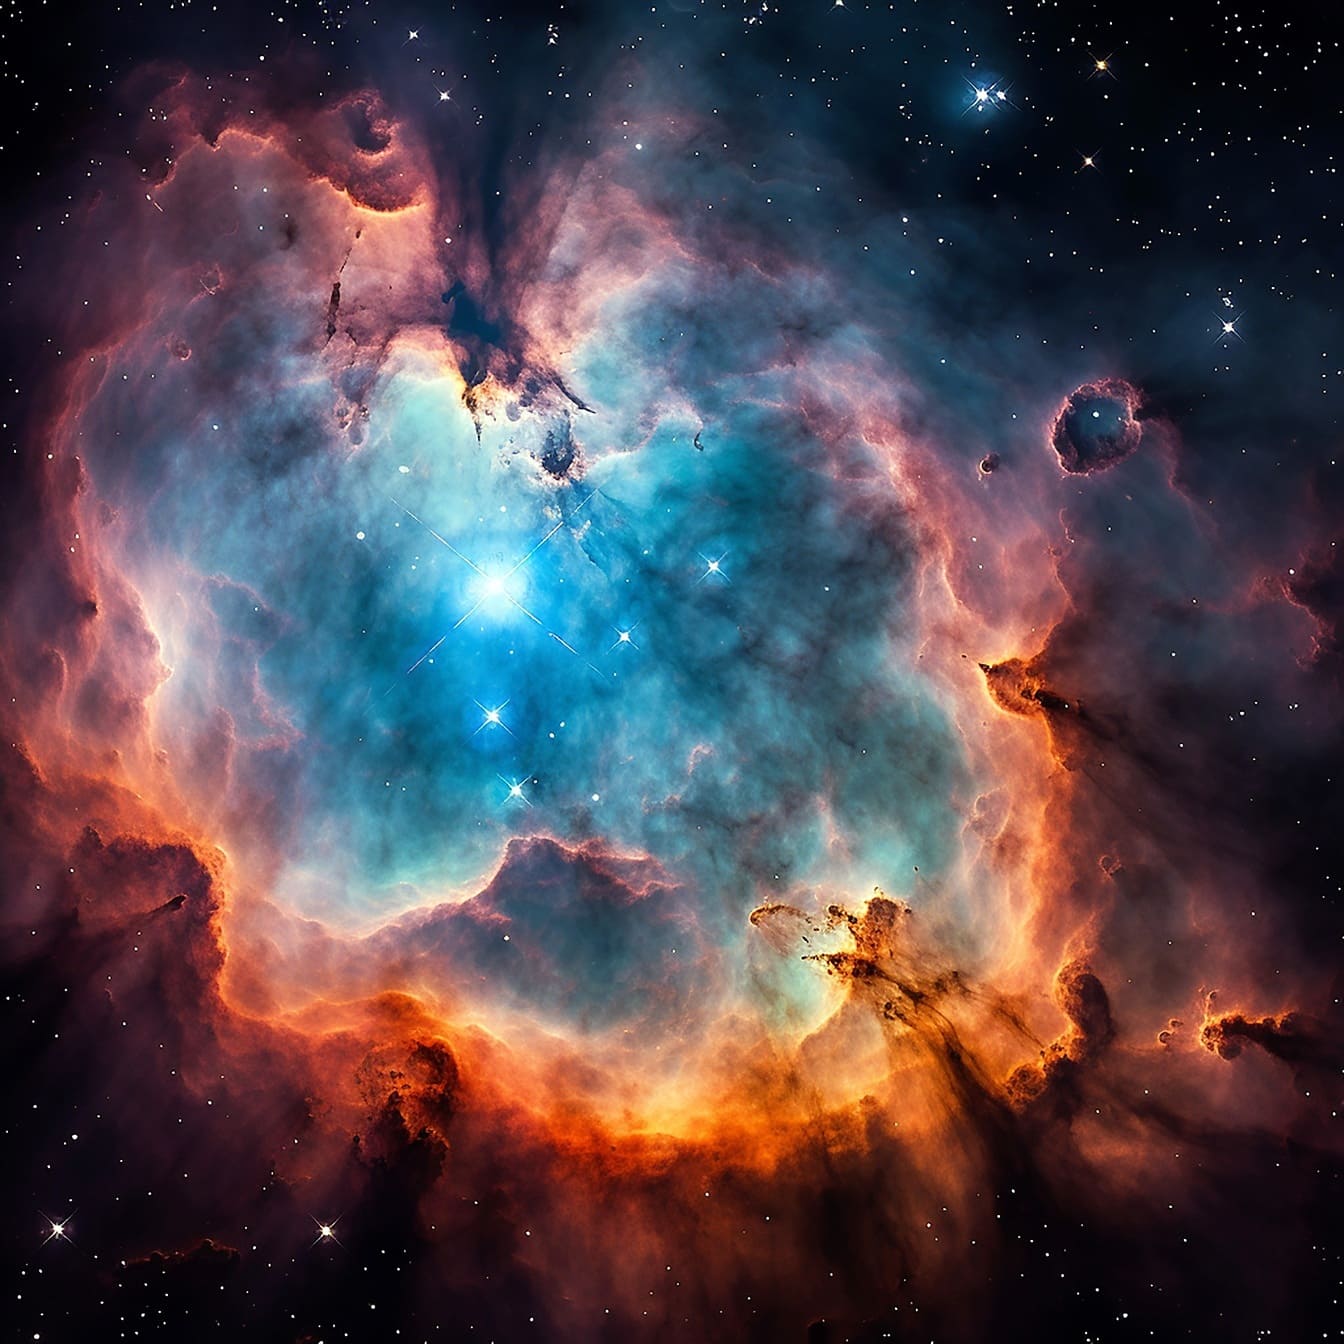 Donkerblauwe nevel in de diepe fotografie van de heelalastronomie